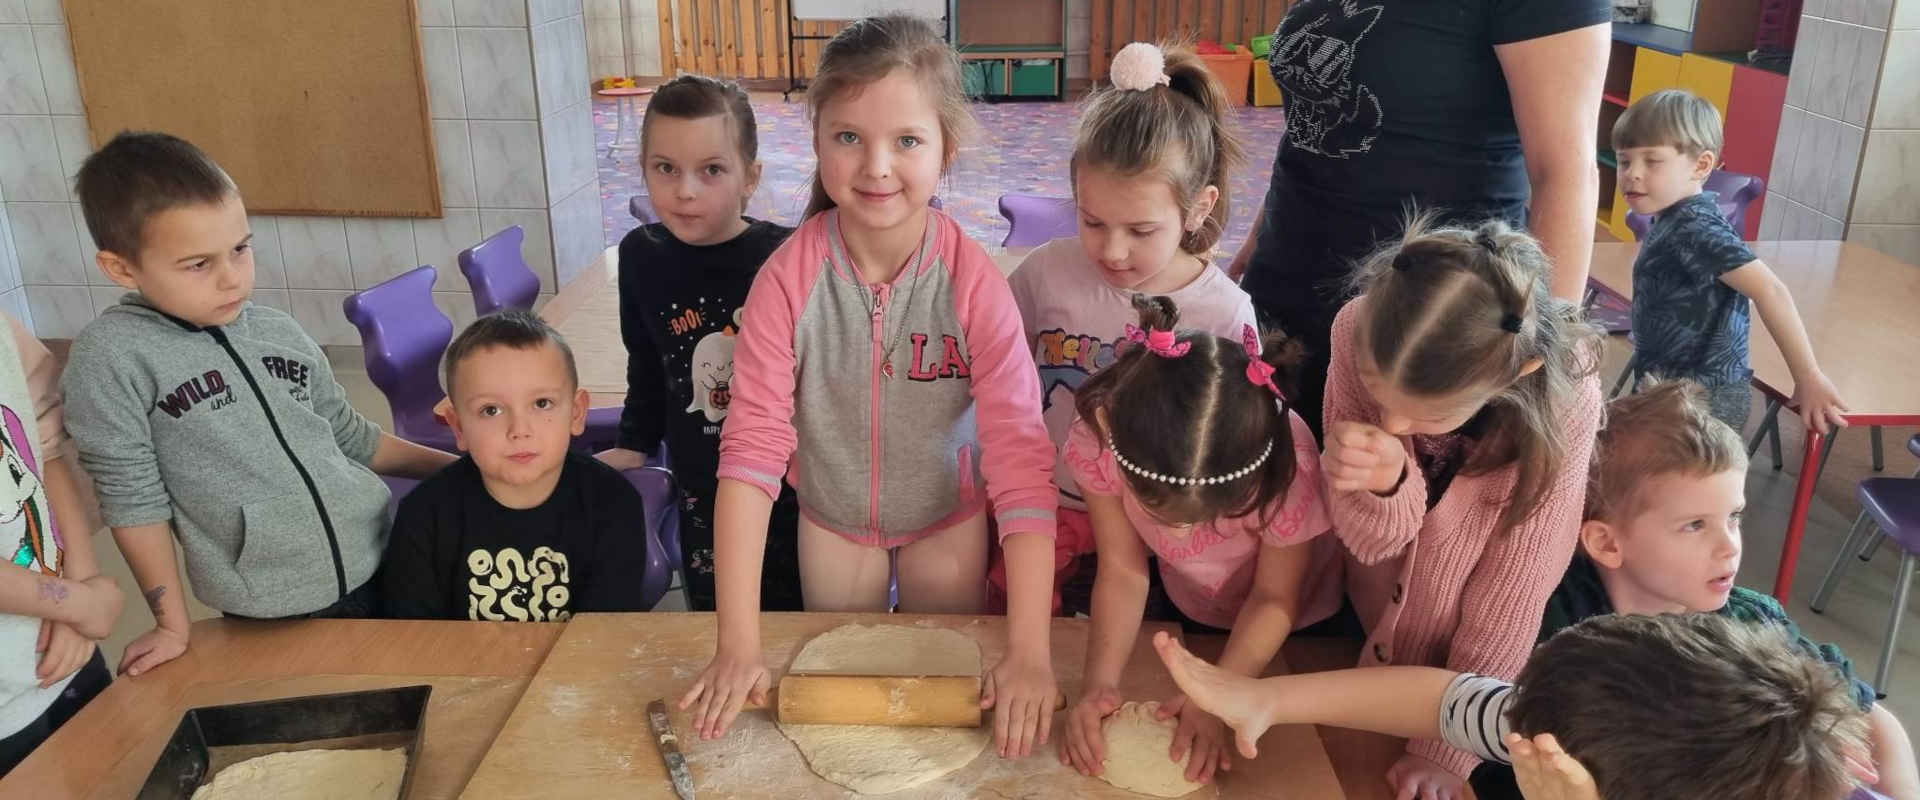 Dzieci robią ciasto na pizzę